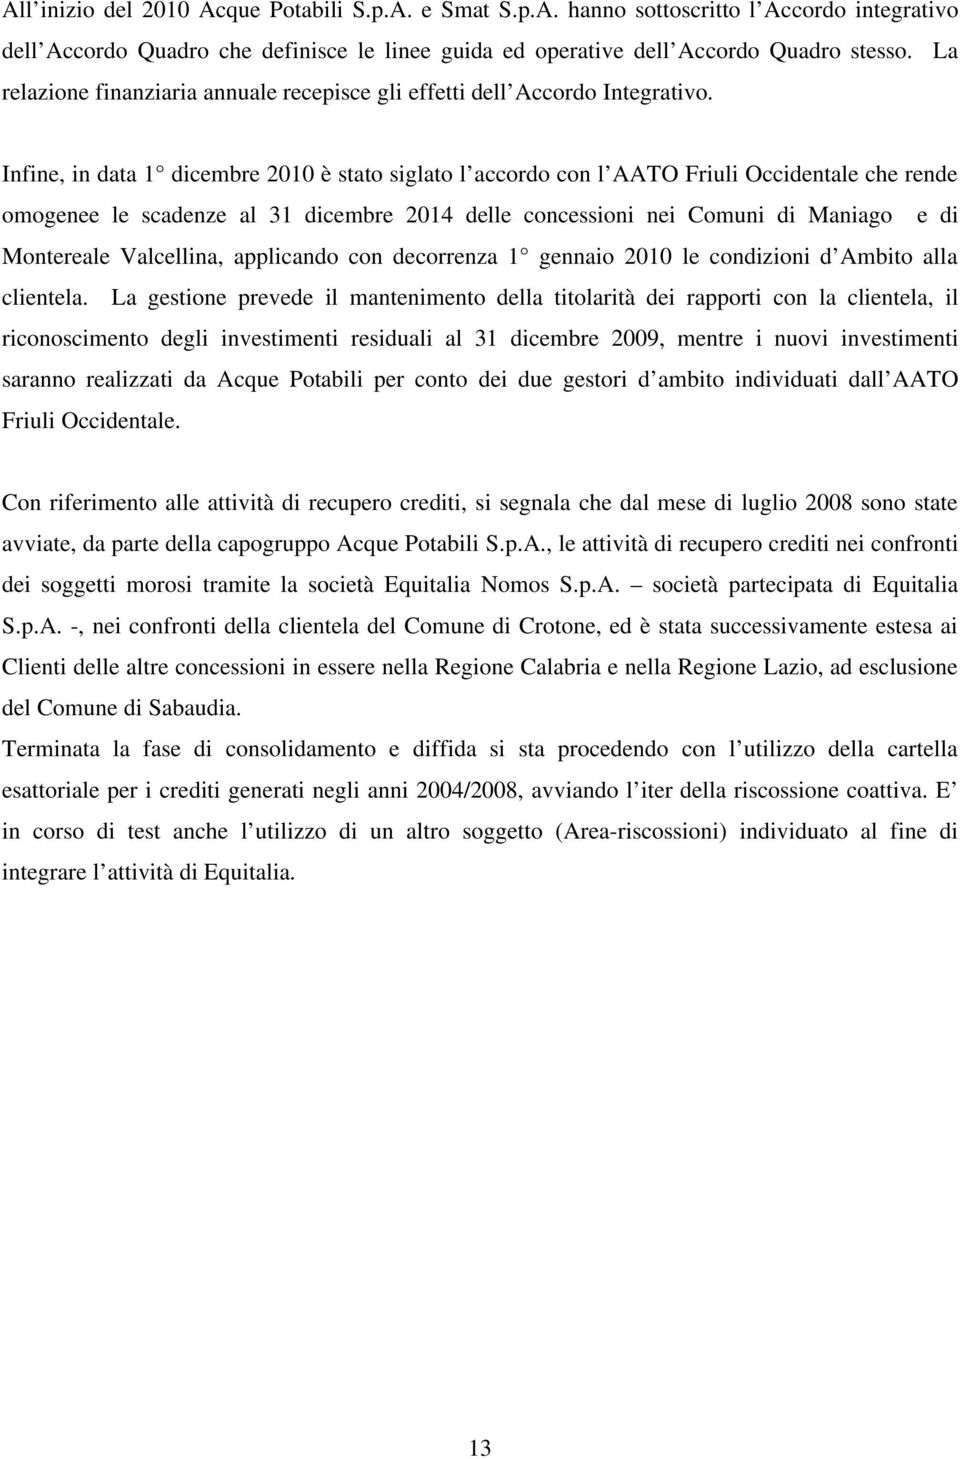 Infine, in data 1 dicembre 2010 è stato siglato l accordo con l AATO Friuli Occidentale che rende omogenee le scadenze al 31 dicembre 2014 delle concessioni nei Comuni di Maniago e di Montereale